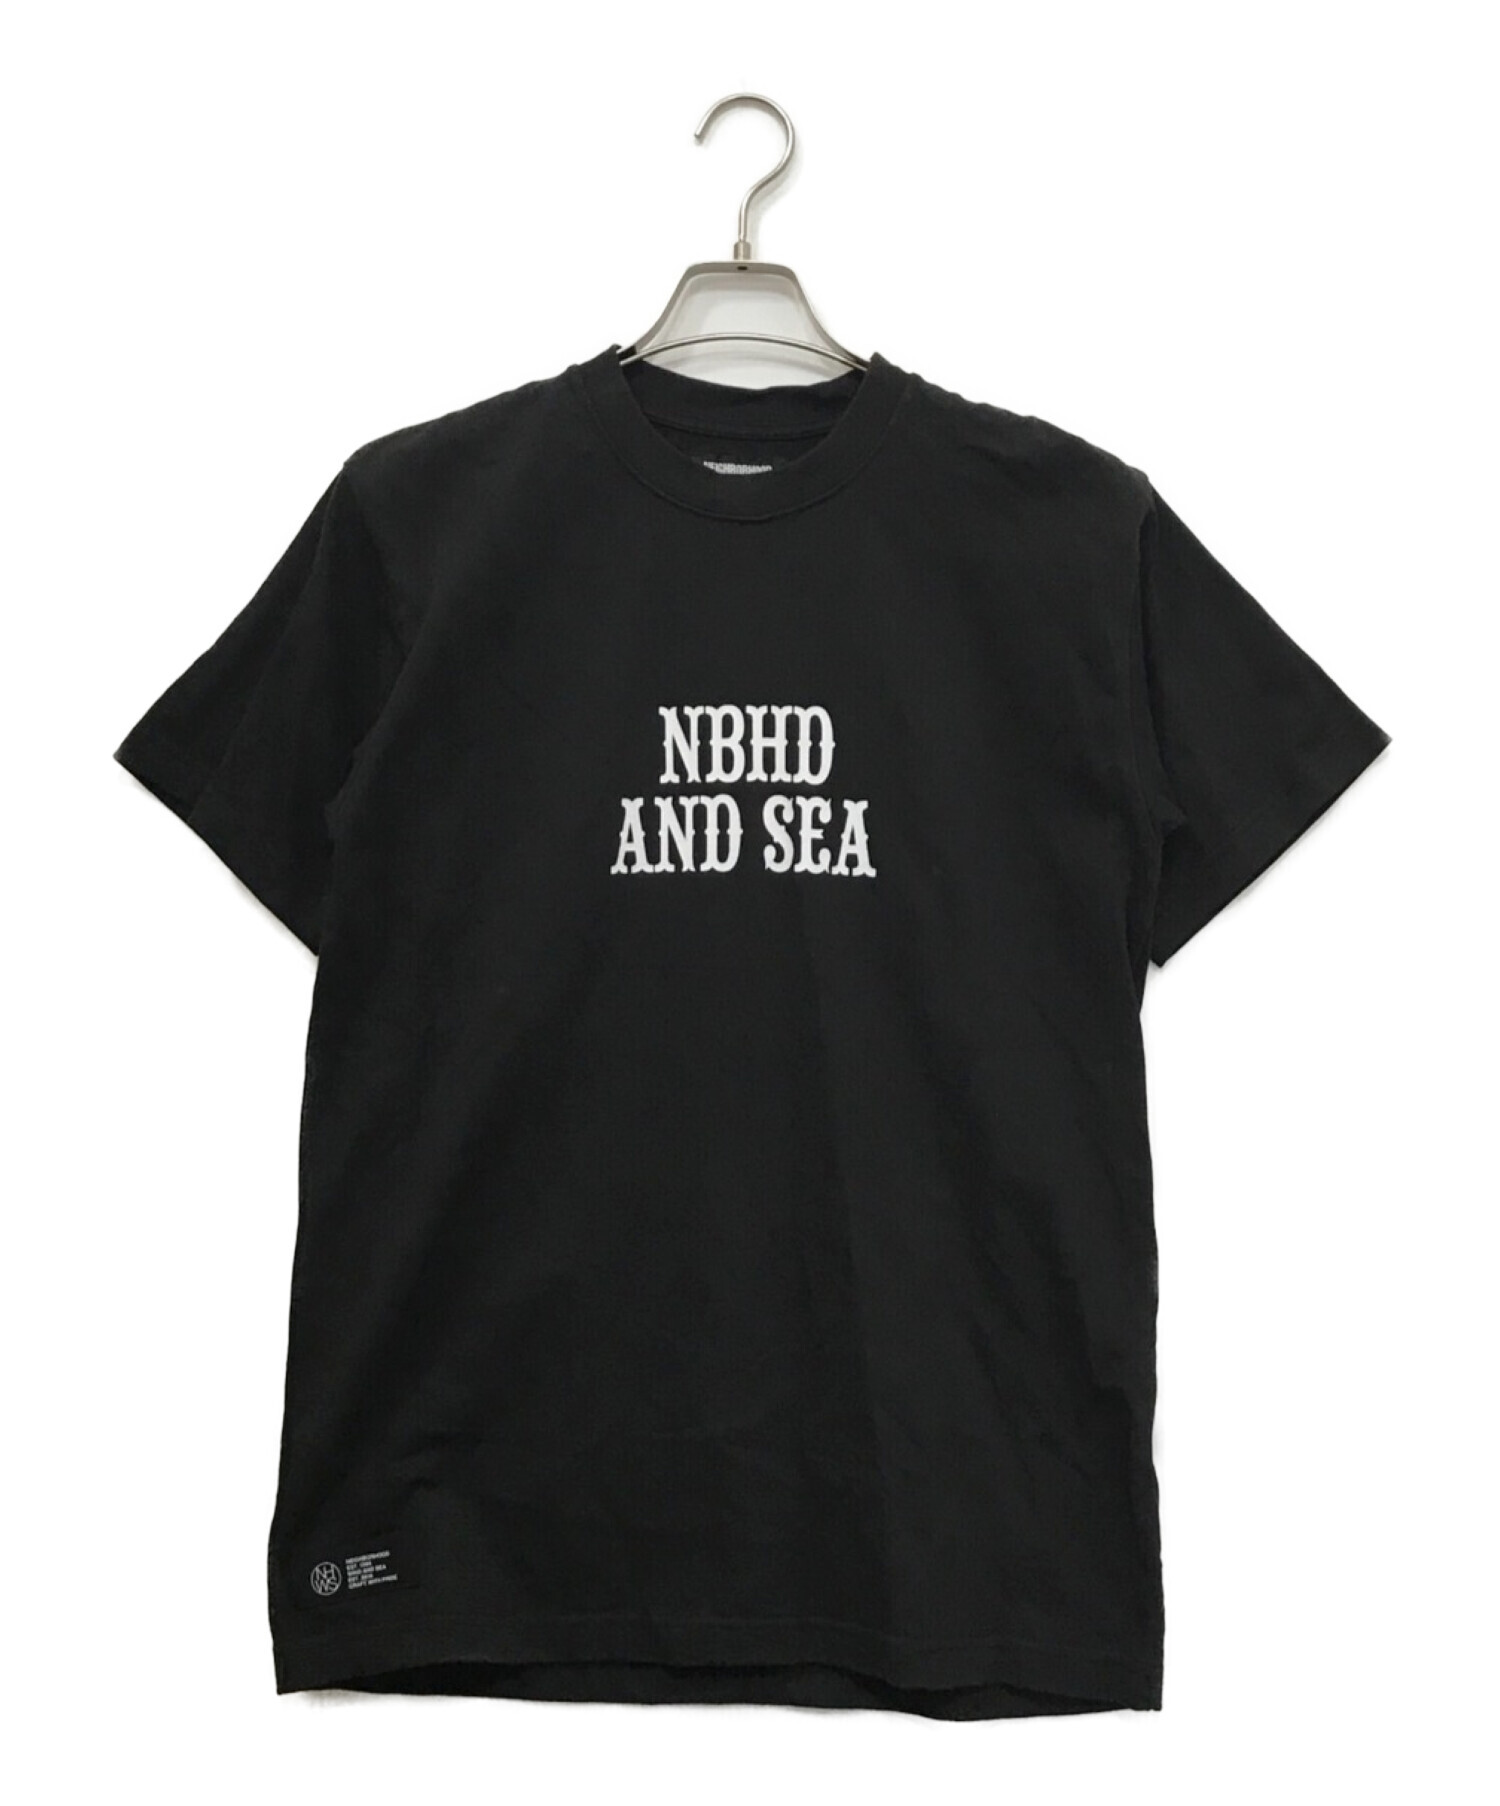 WIND AND SEA × NEIGHBORHOOD シャツ 黒 M